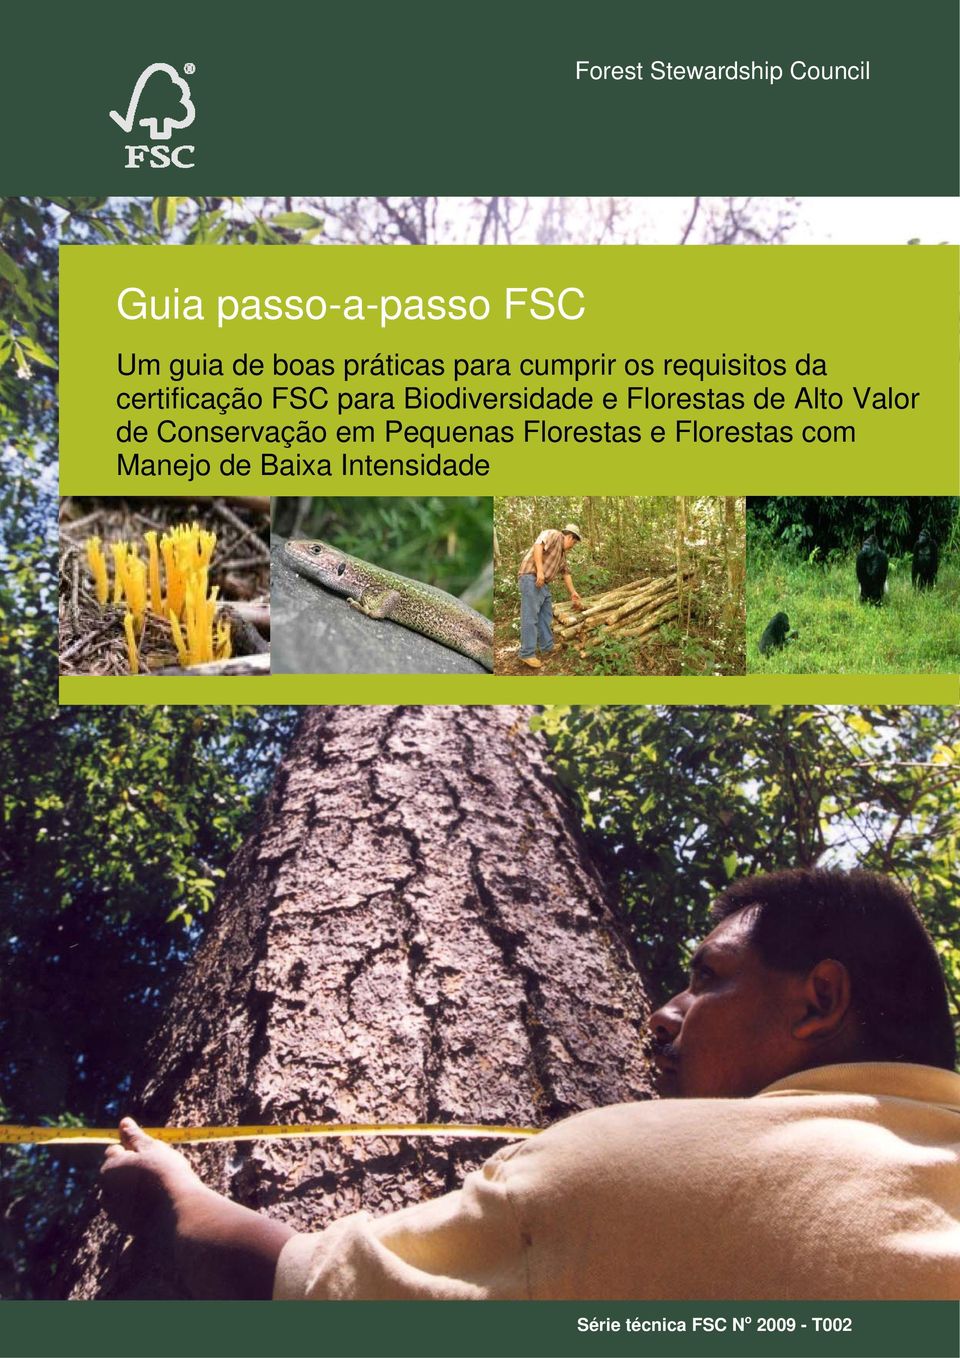 Alto Valor de Conservação em Pequenas Florestas e Florestas com